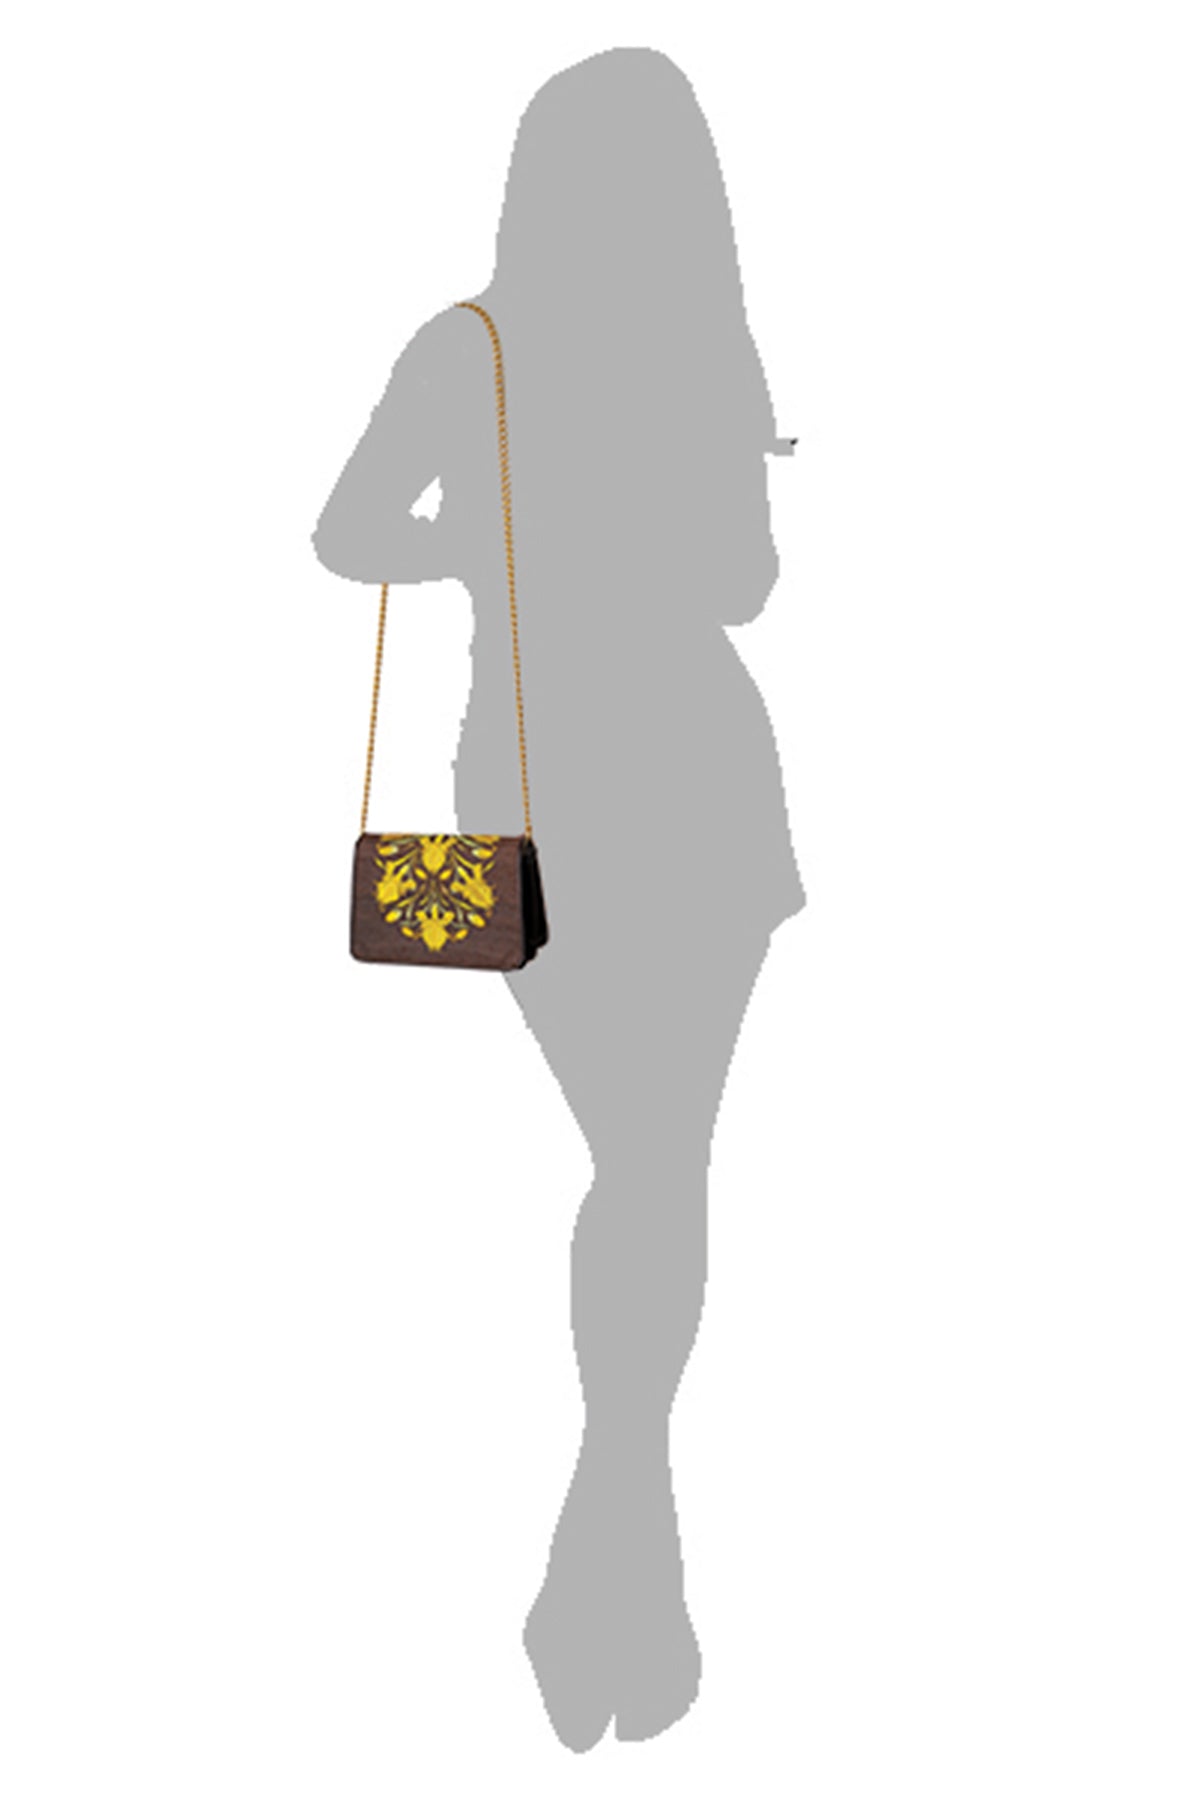 Marigold-Brown Leather Shoulder Bag